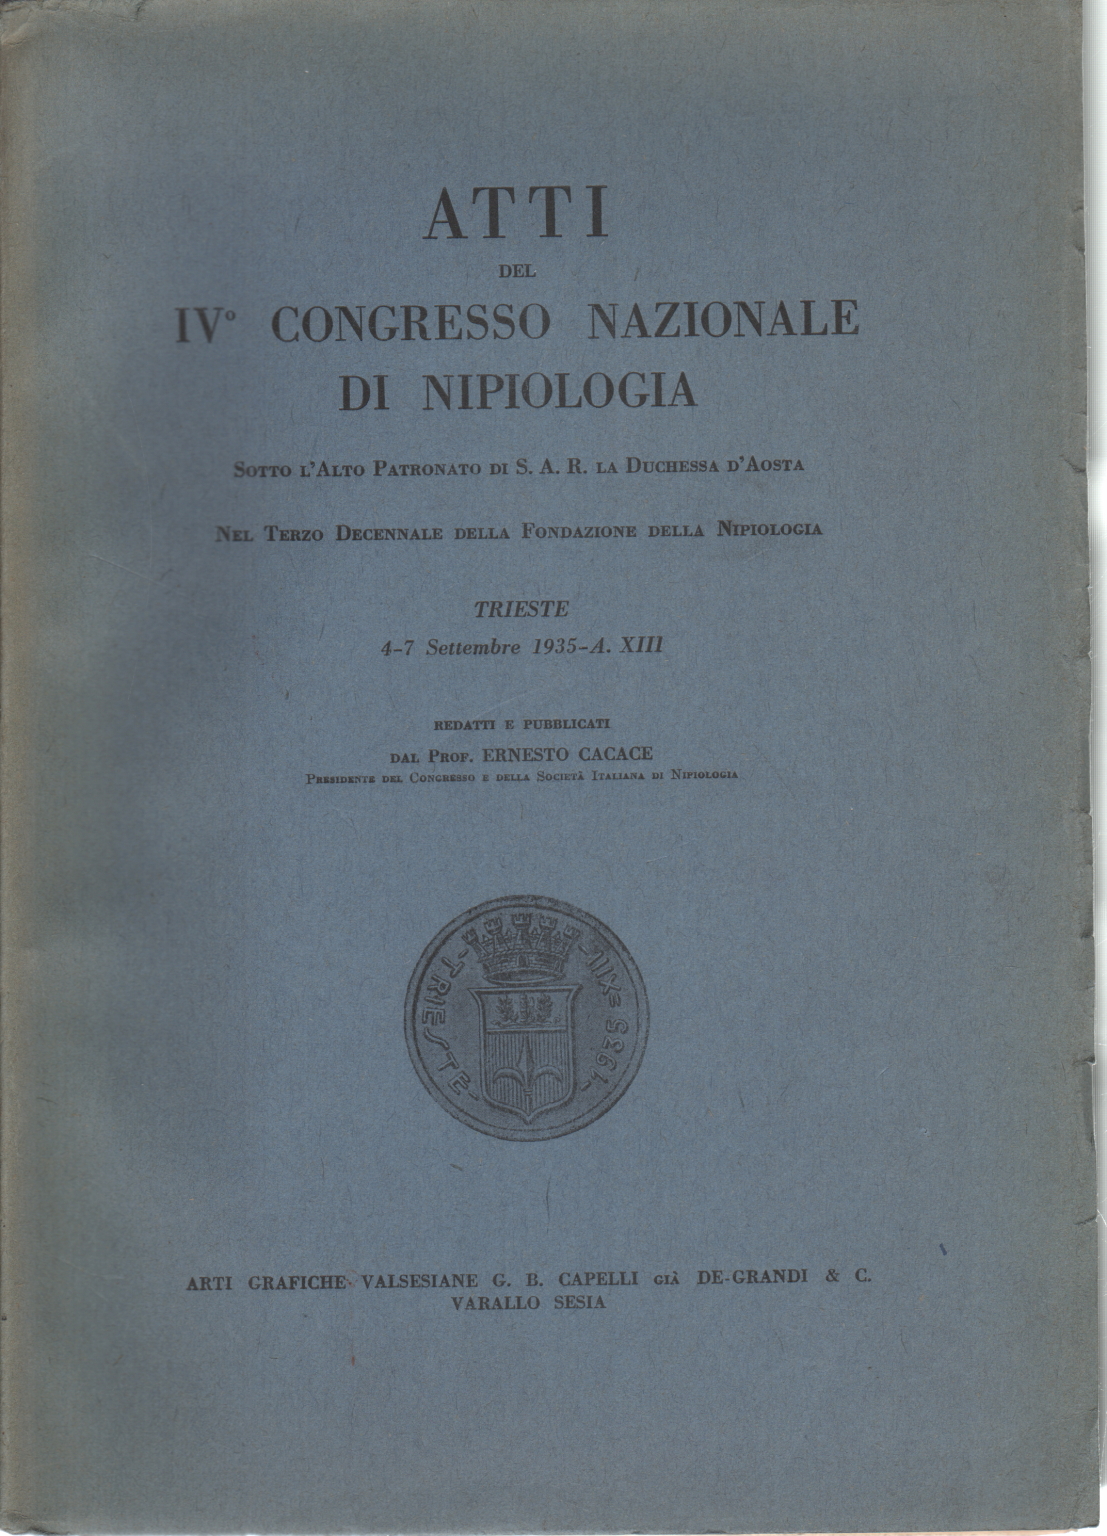 Handlungen des IVº Nationalen Kongresses für Nipiologia, Ernesto Cacace